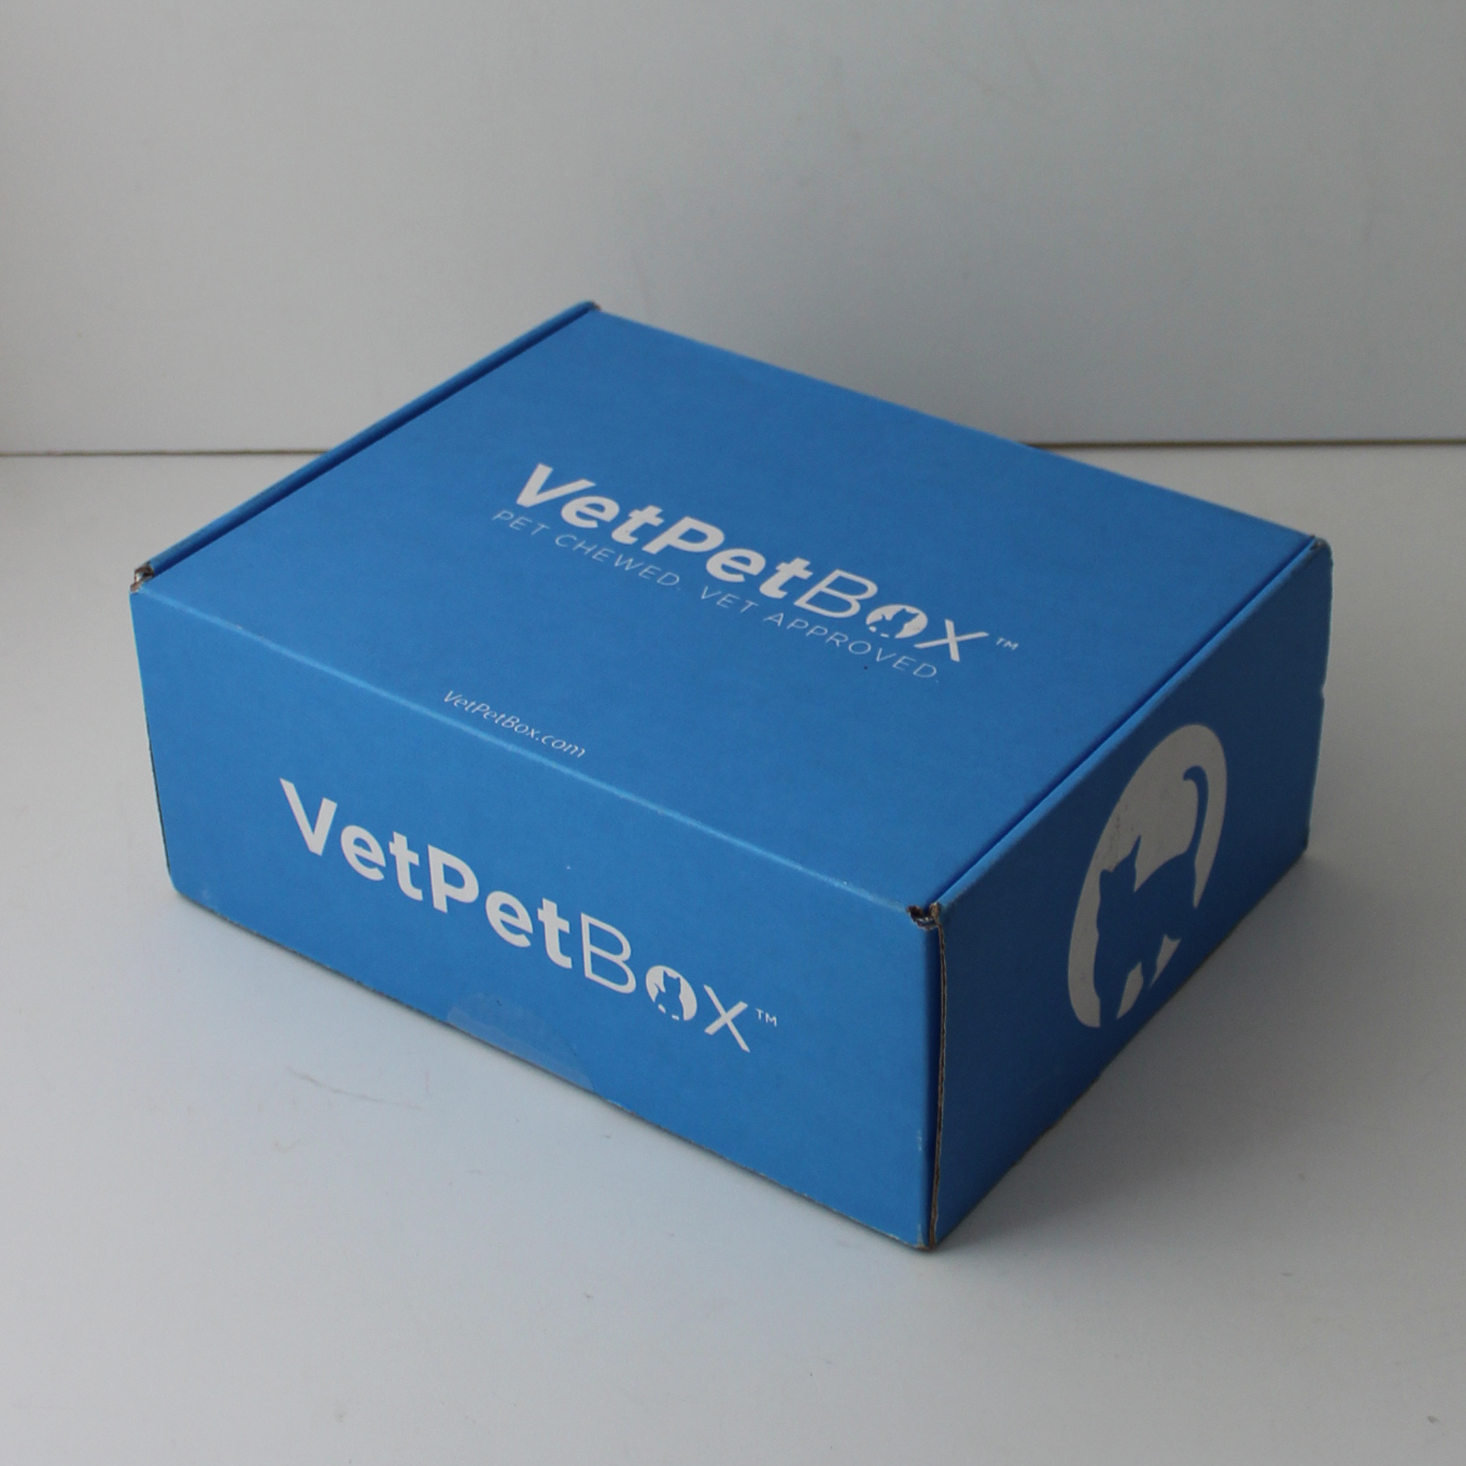 VetPet Box Cat Subscription Review + Coupon – June 2020